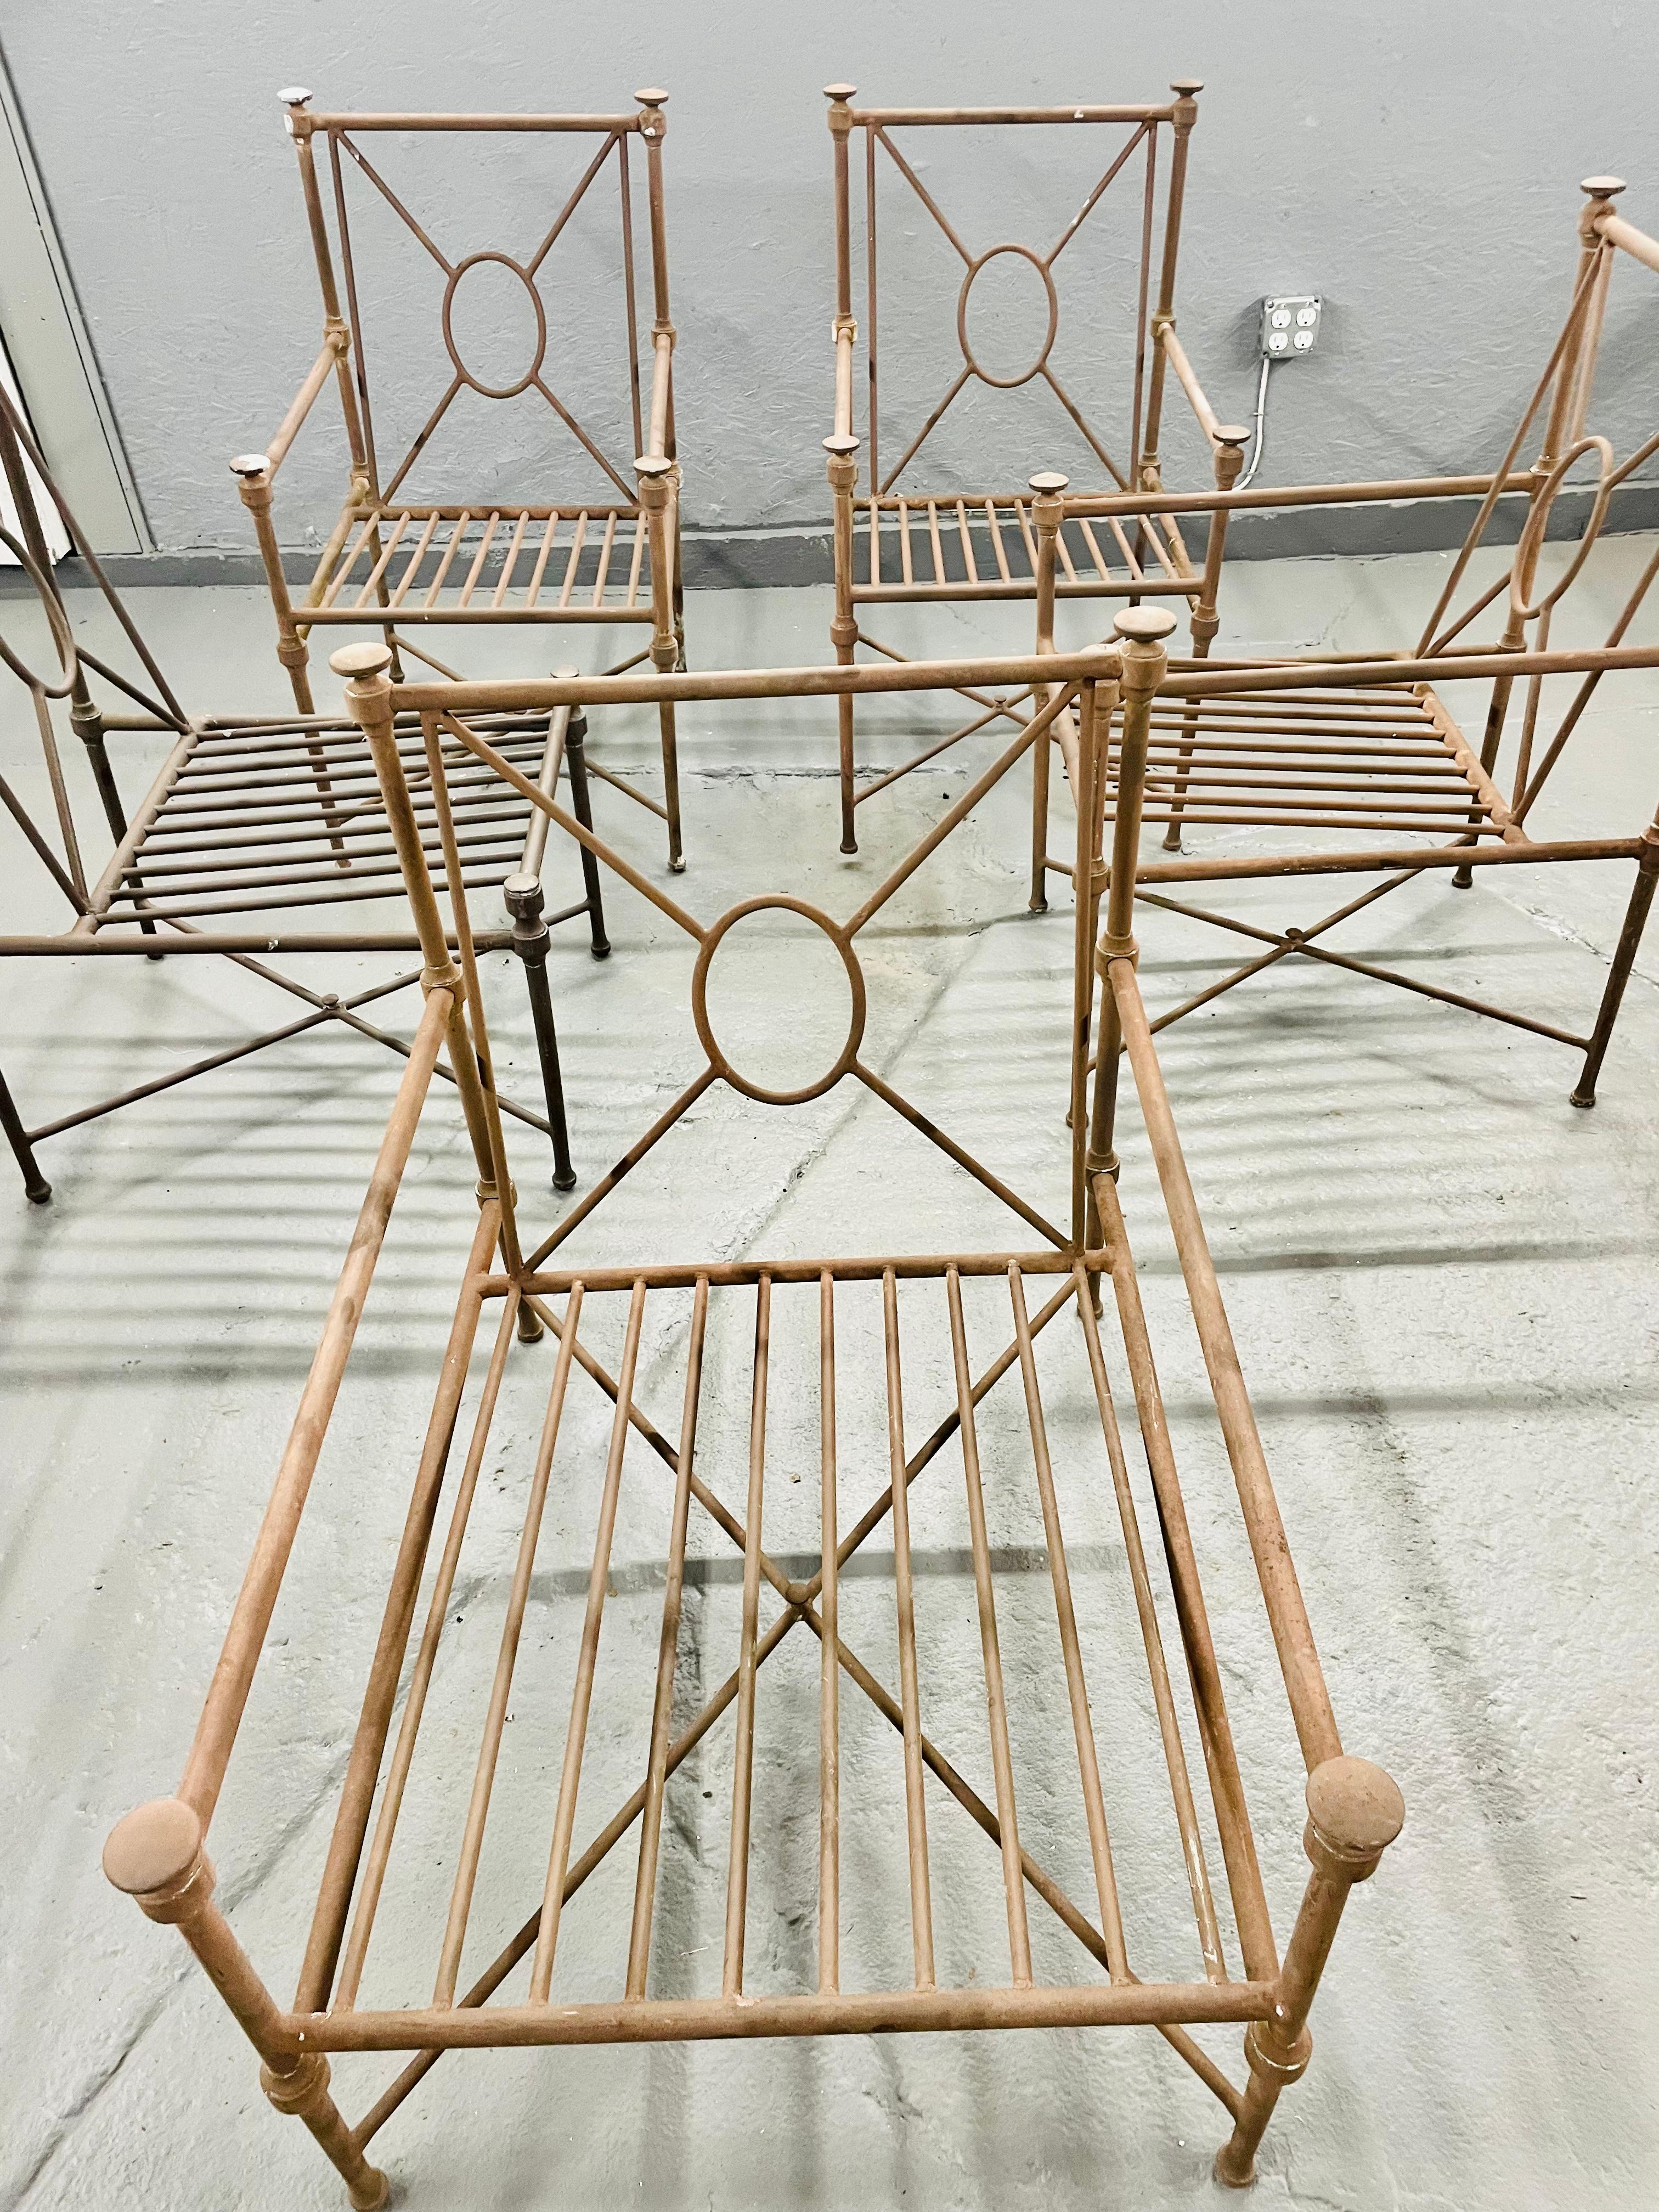 Mario Papperzini pour Salterini Fauteuils

Ensemble de 5 fauteuils en aluminium

Design/One classique avec 